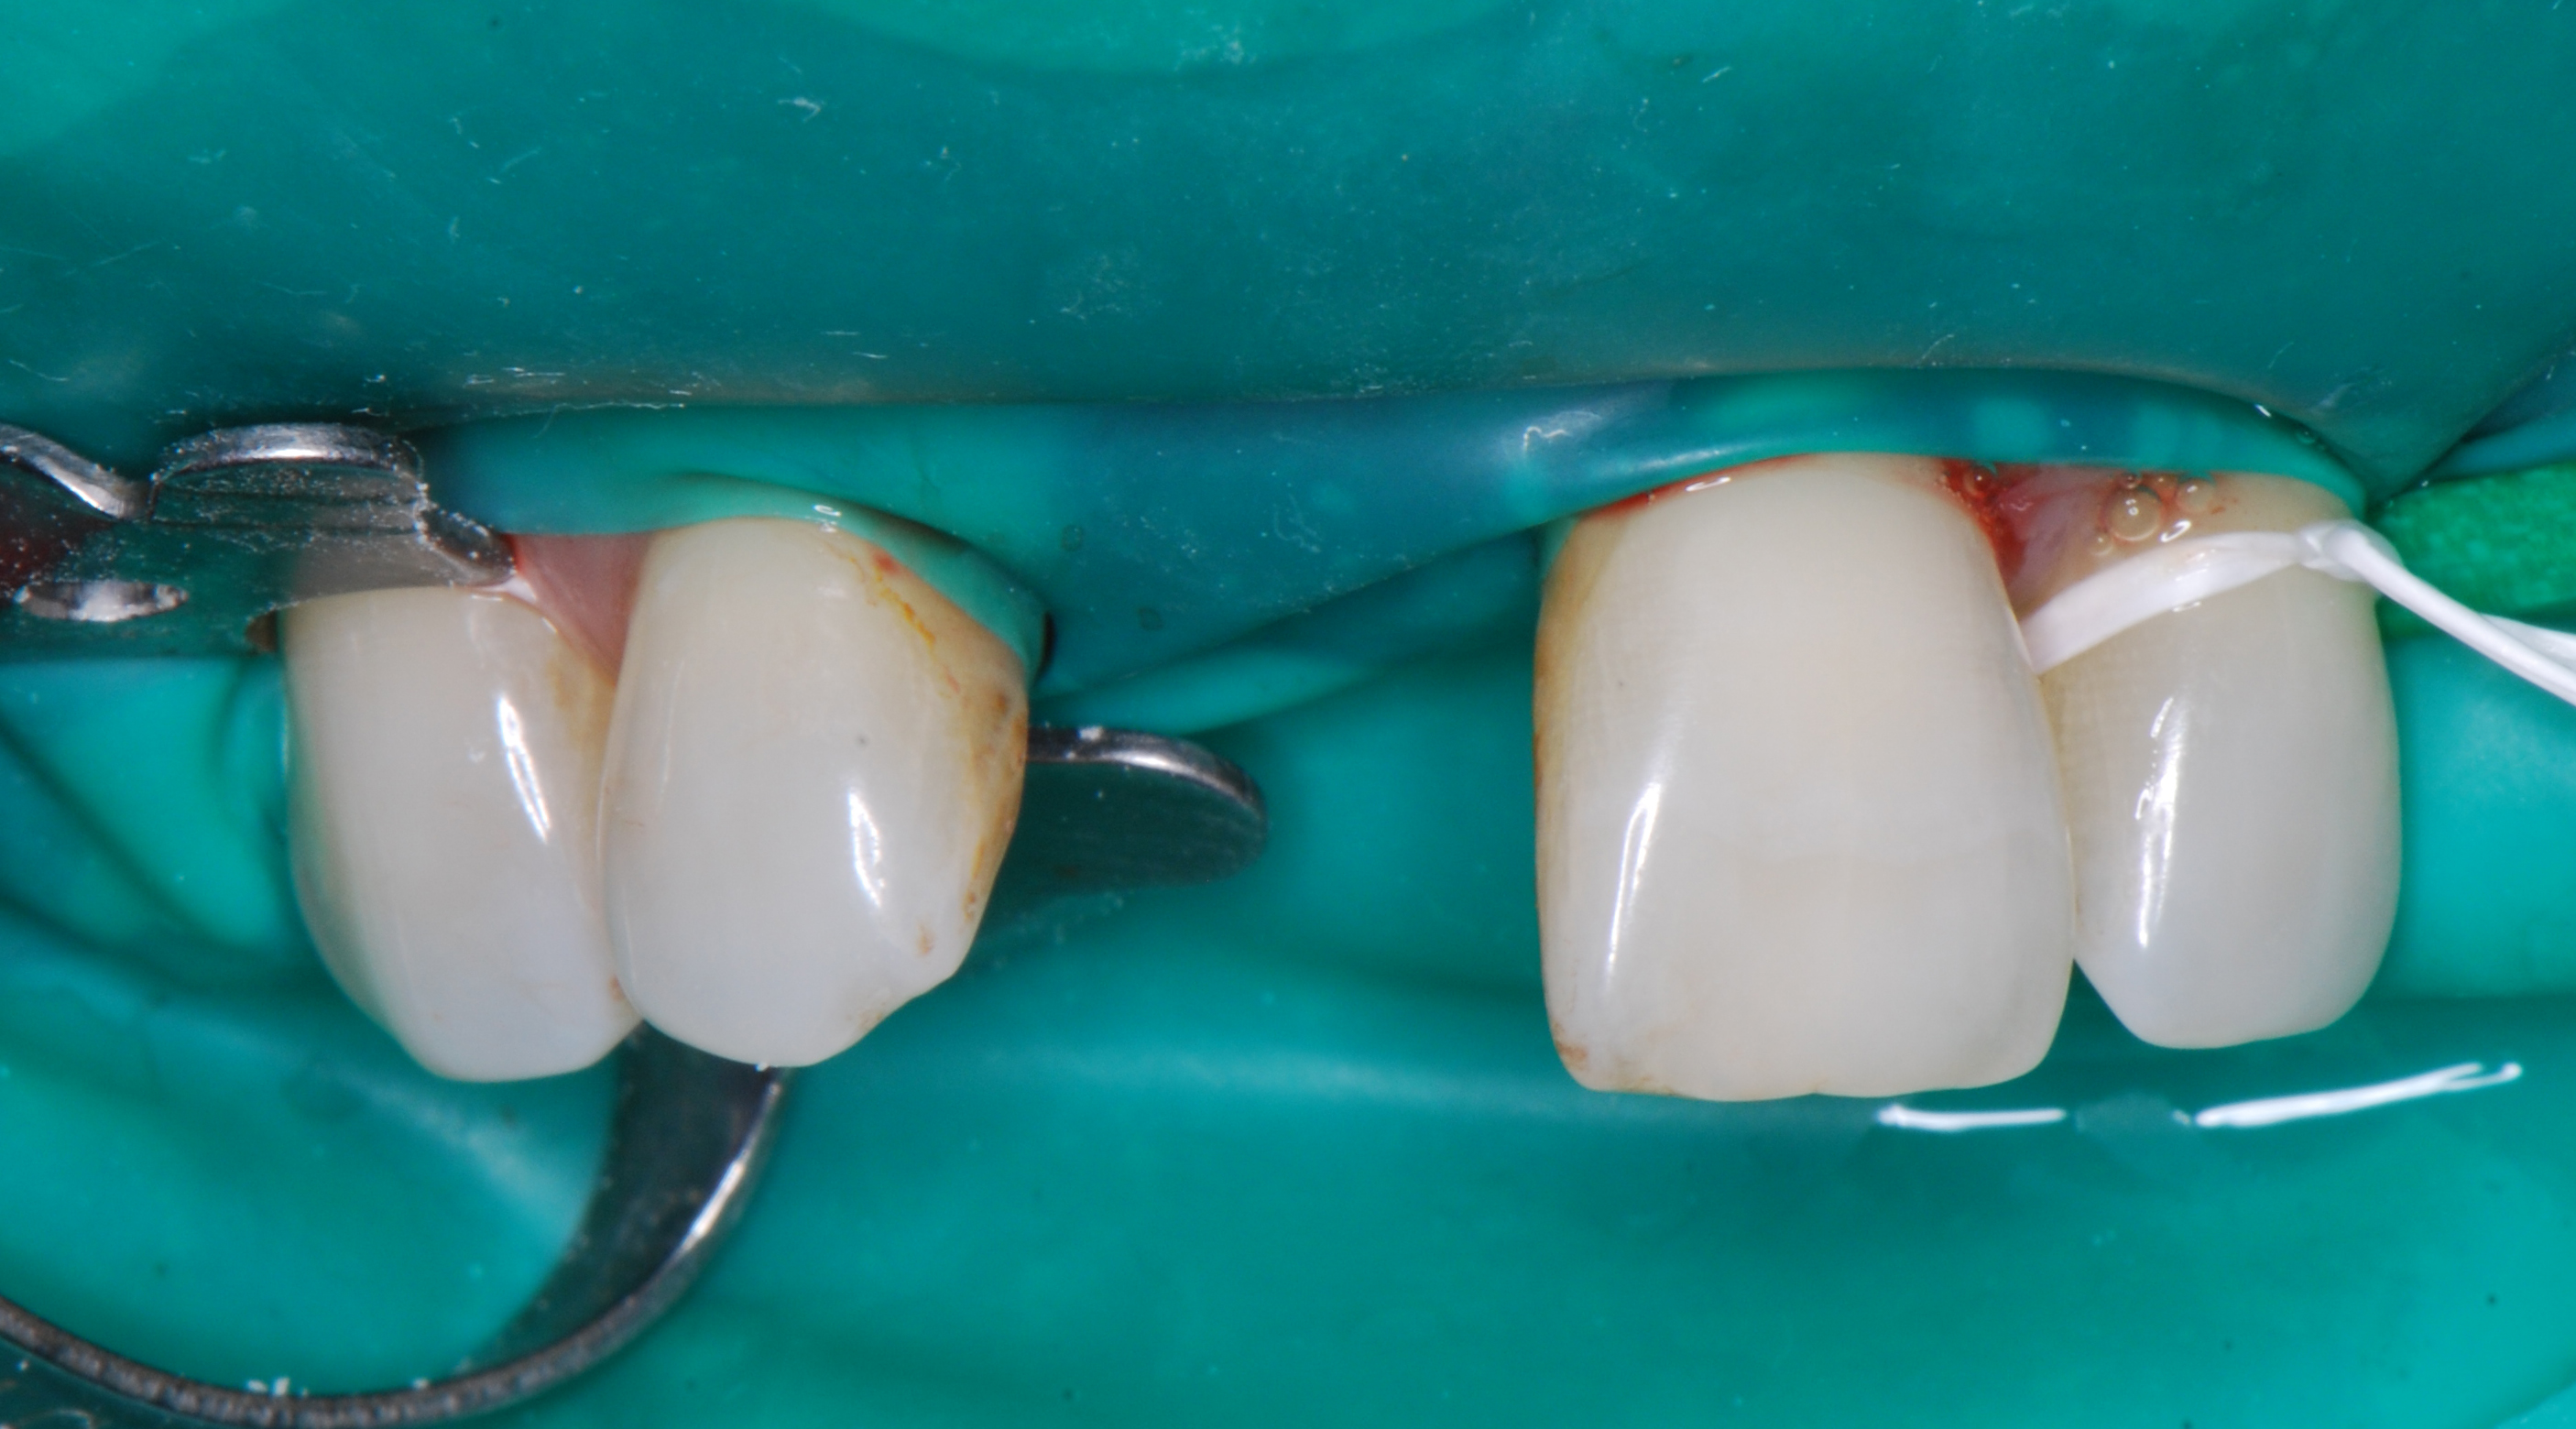  el mismo día de la extracción del incisivo, sale de la consulta con su diente fijo y el implante puesto.